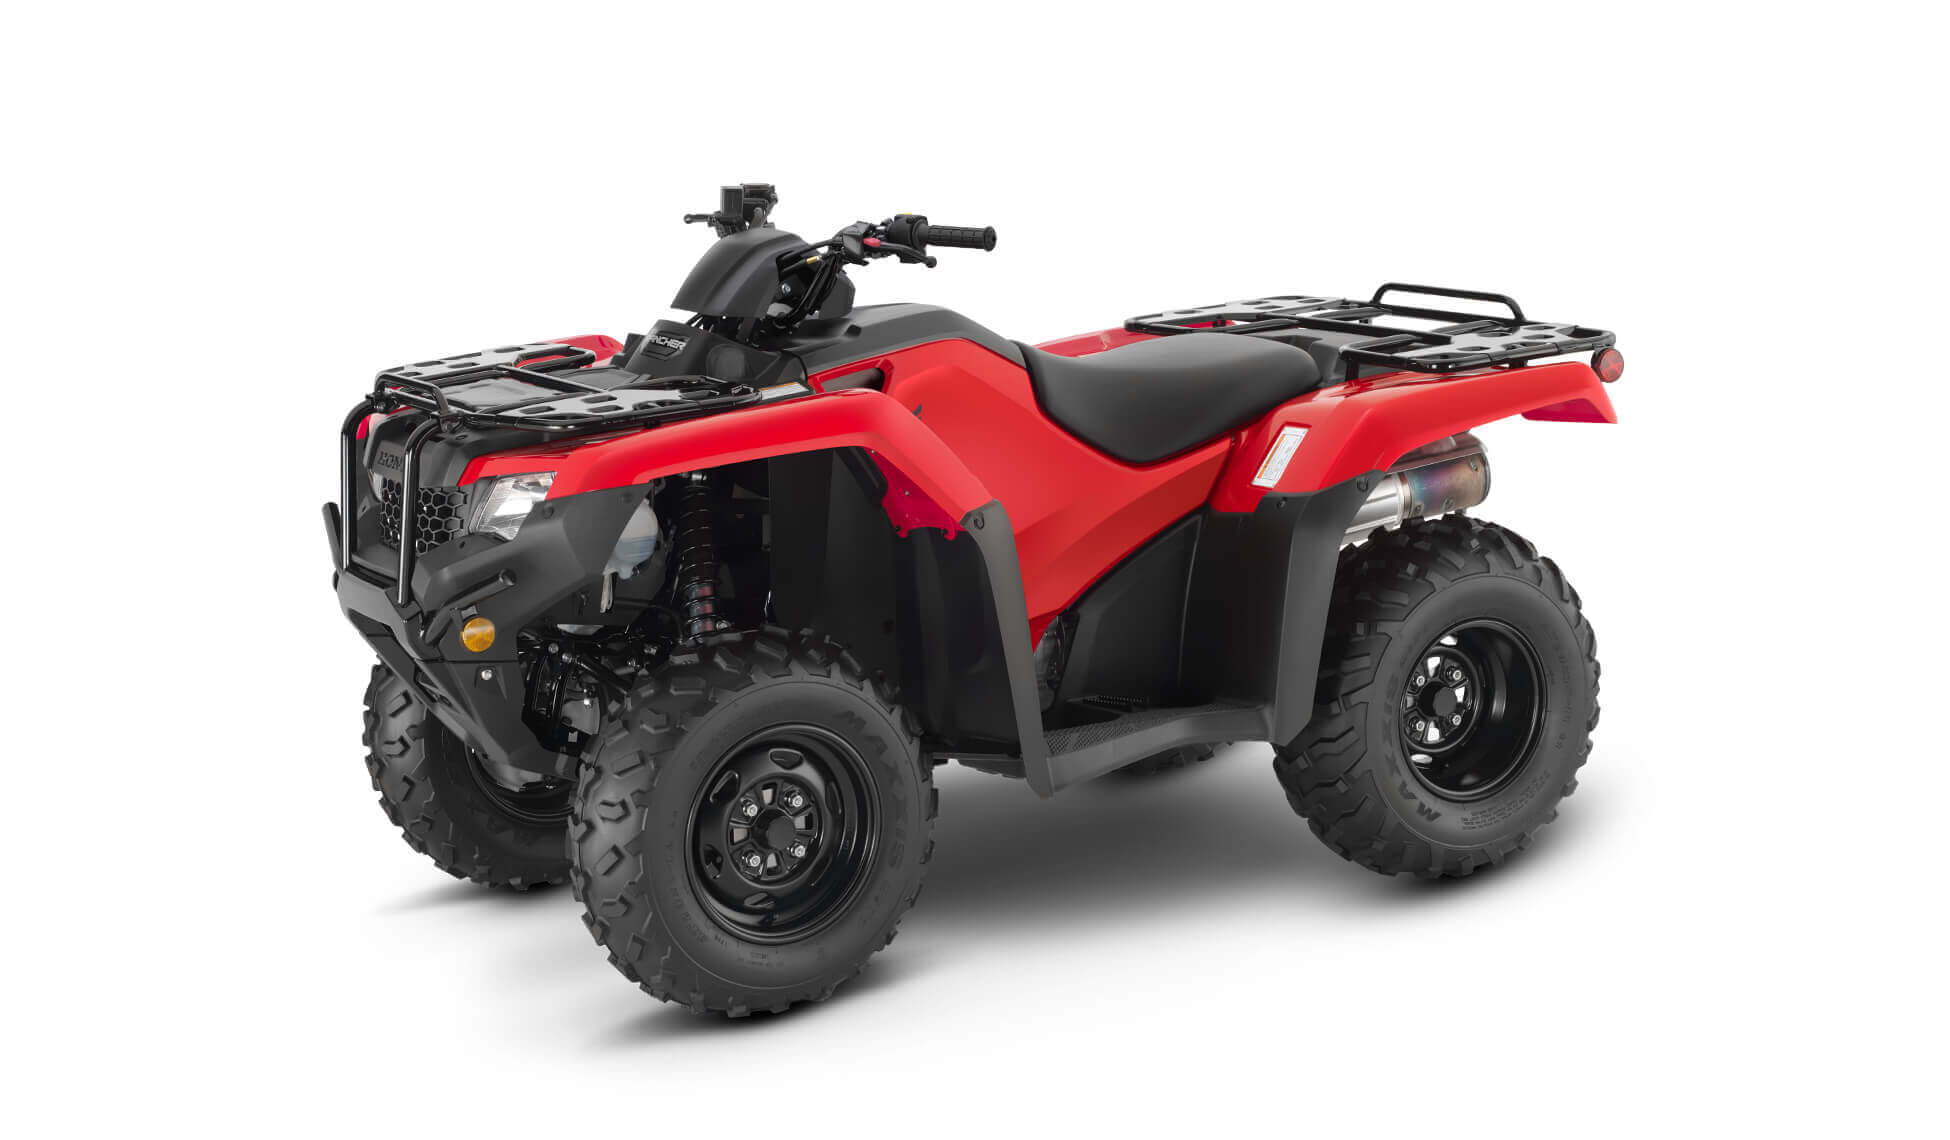 2021 Honda Rancher 420 4x4 ATV | TRX420FM1 Review & Specs